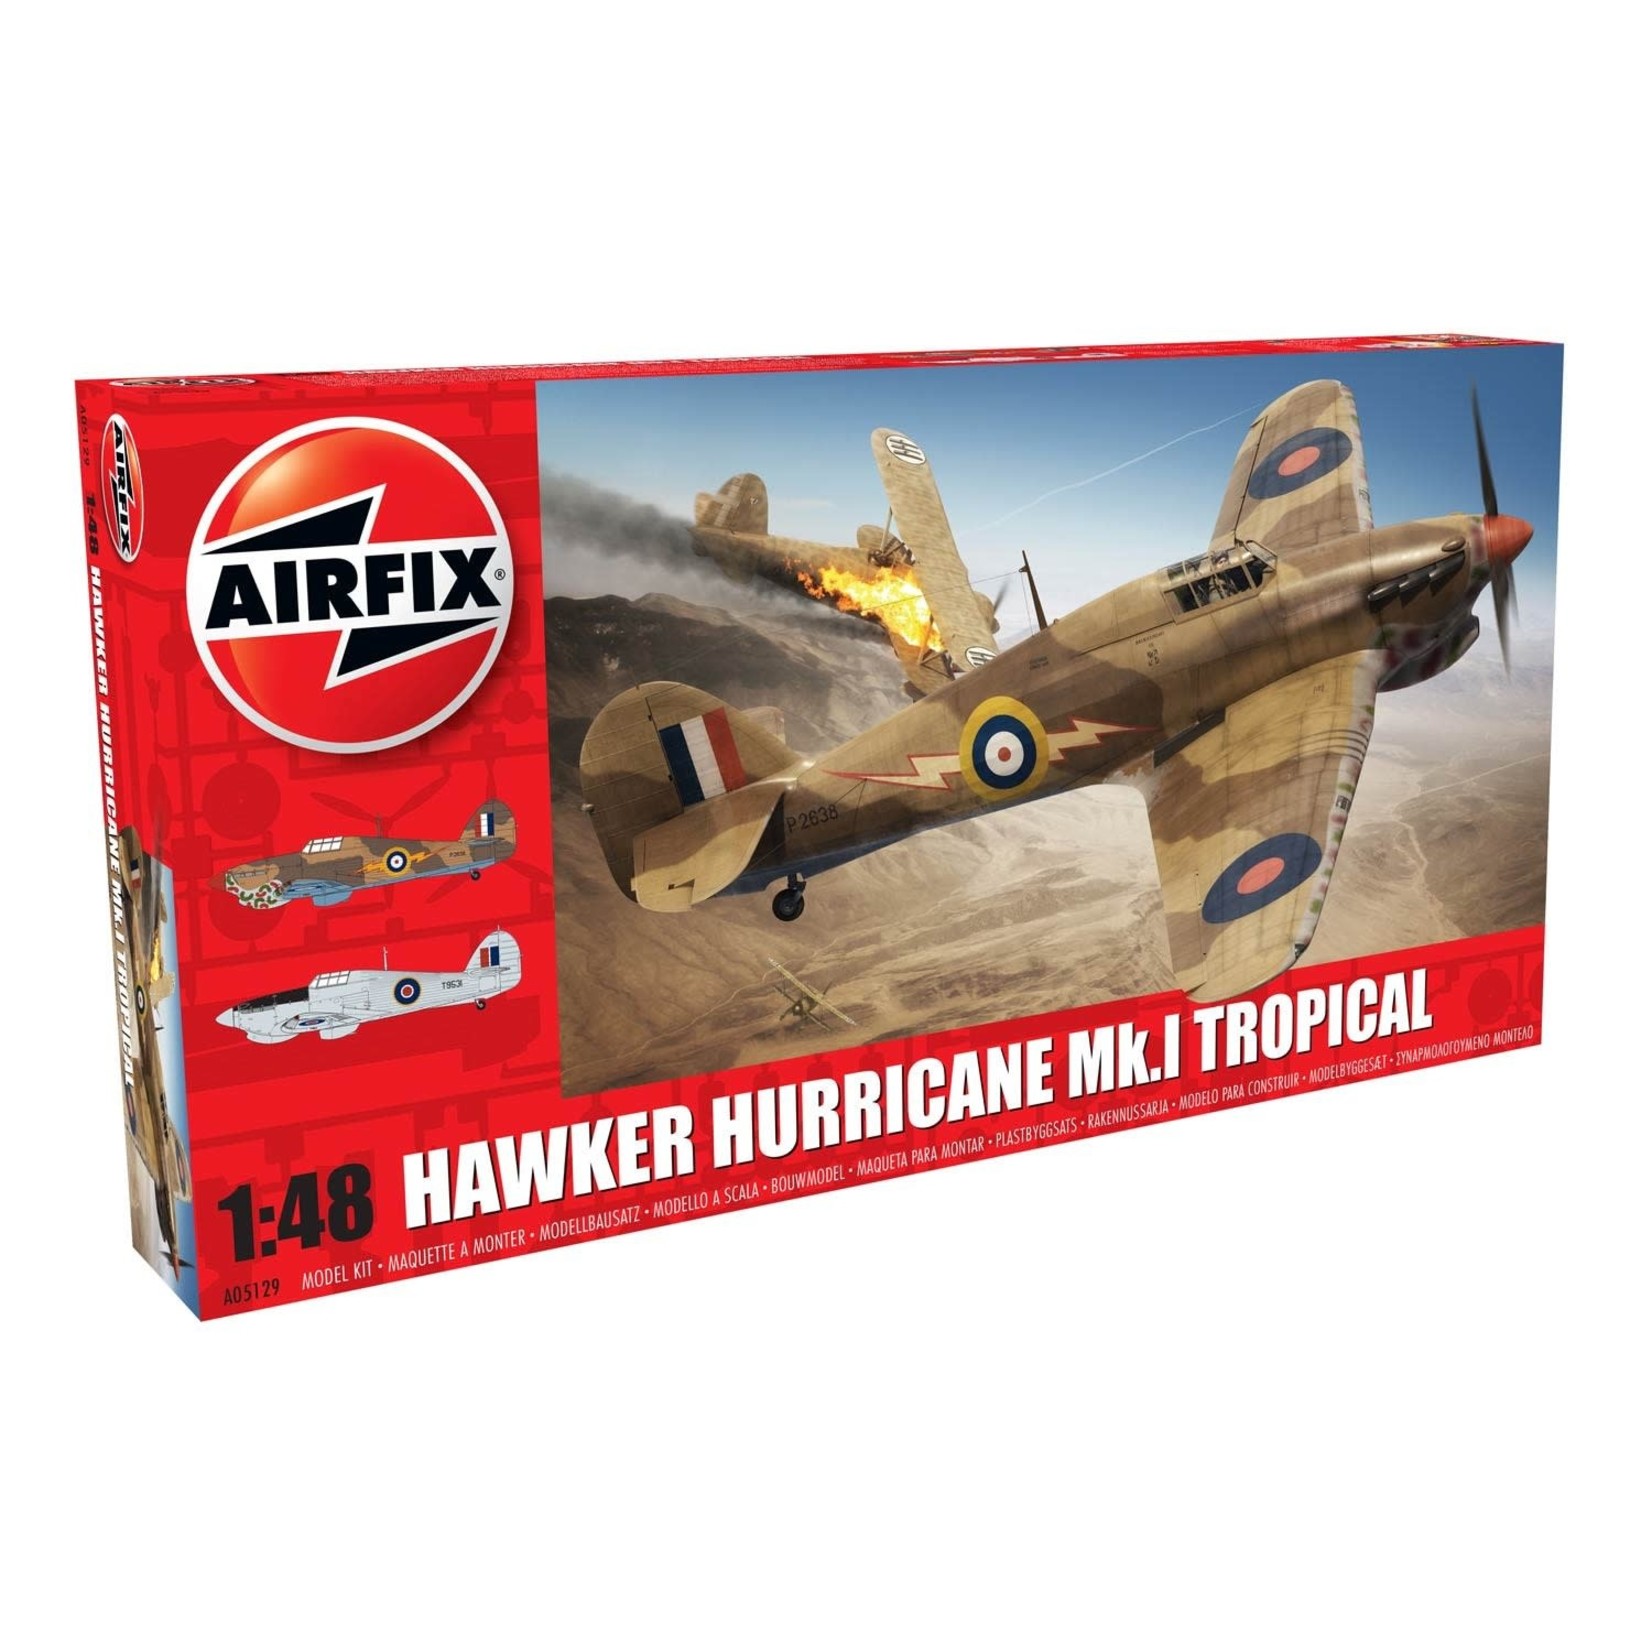 Airfix AIR05129 Hawker Hurricane MK1 Tropical (1/48)